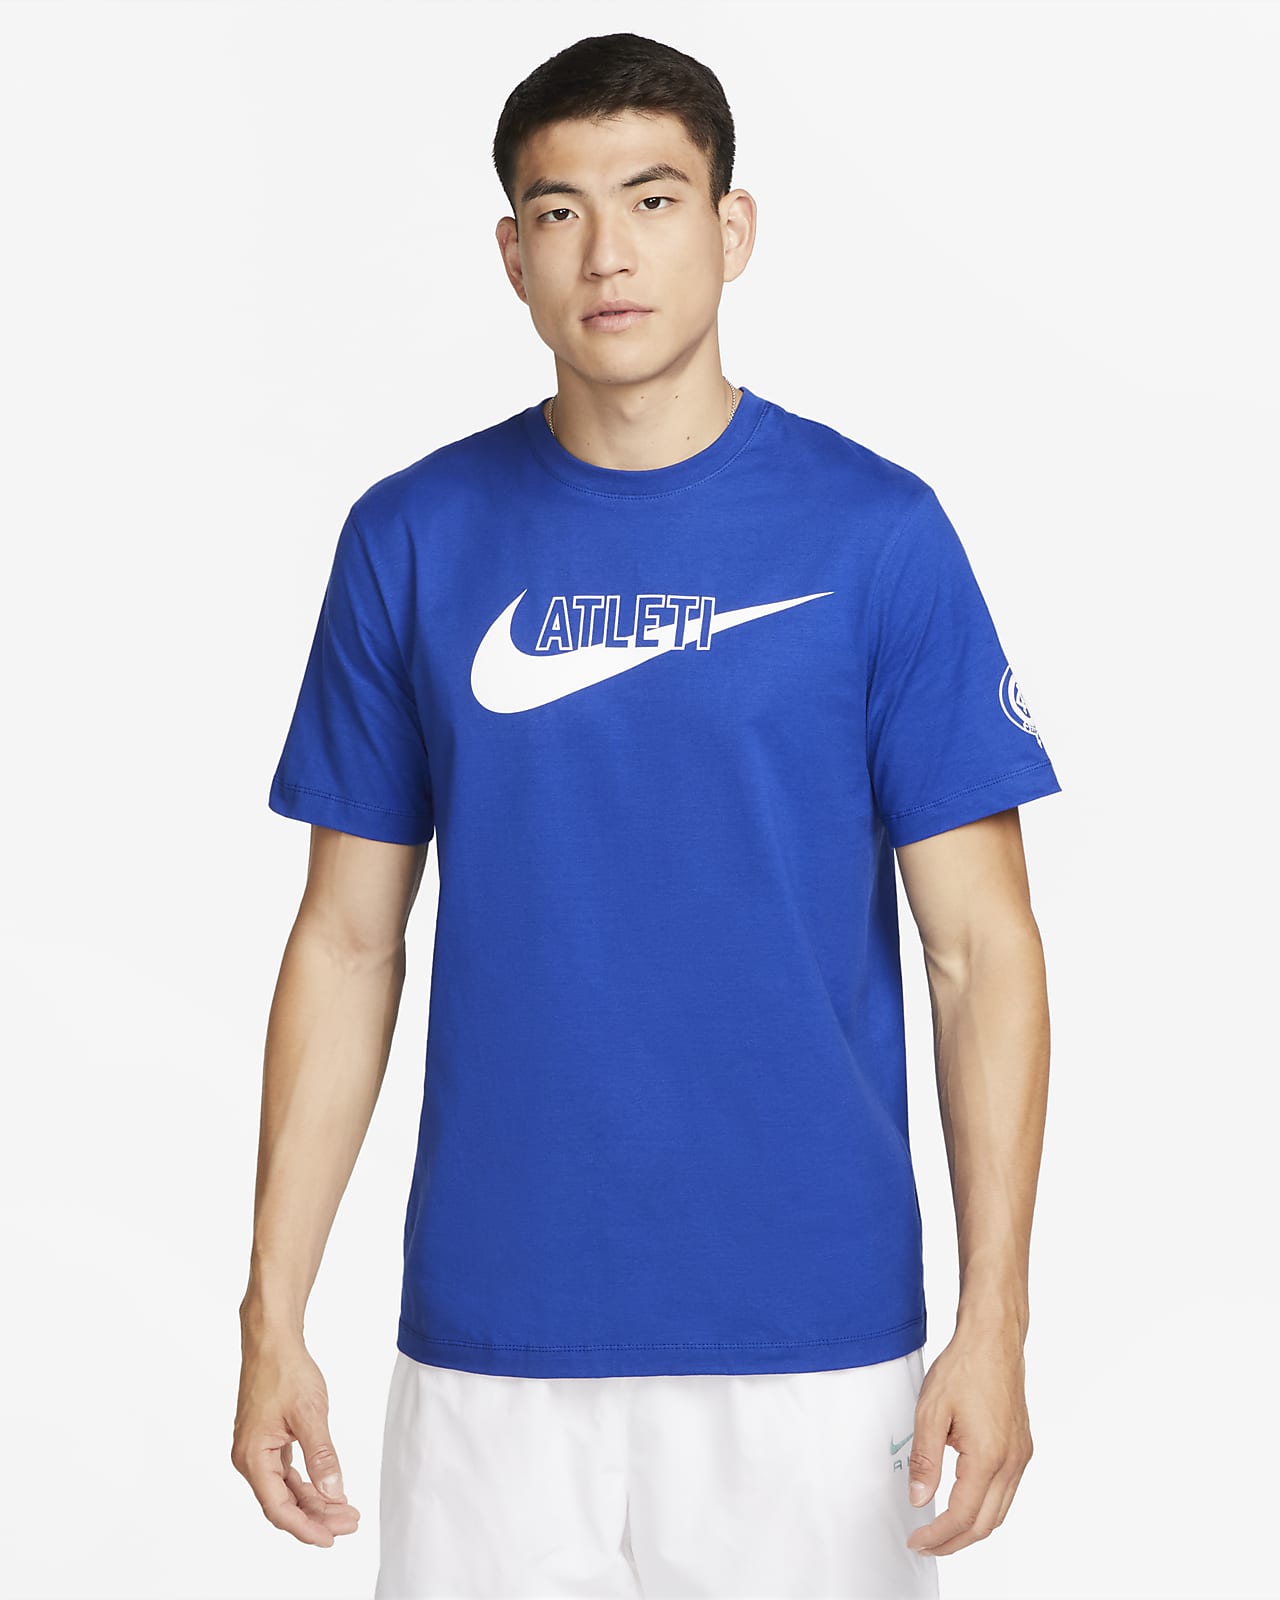 T-shirt Nike Atlético Madrid Swoosh pour homme